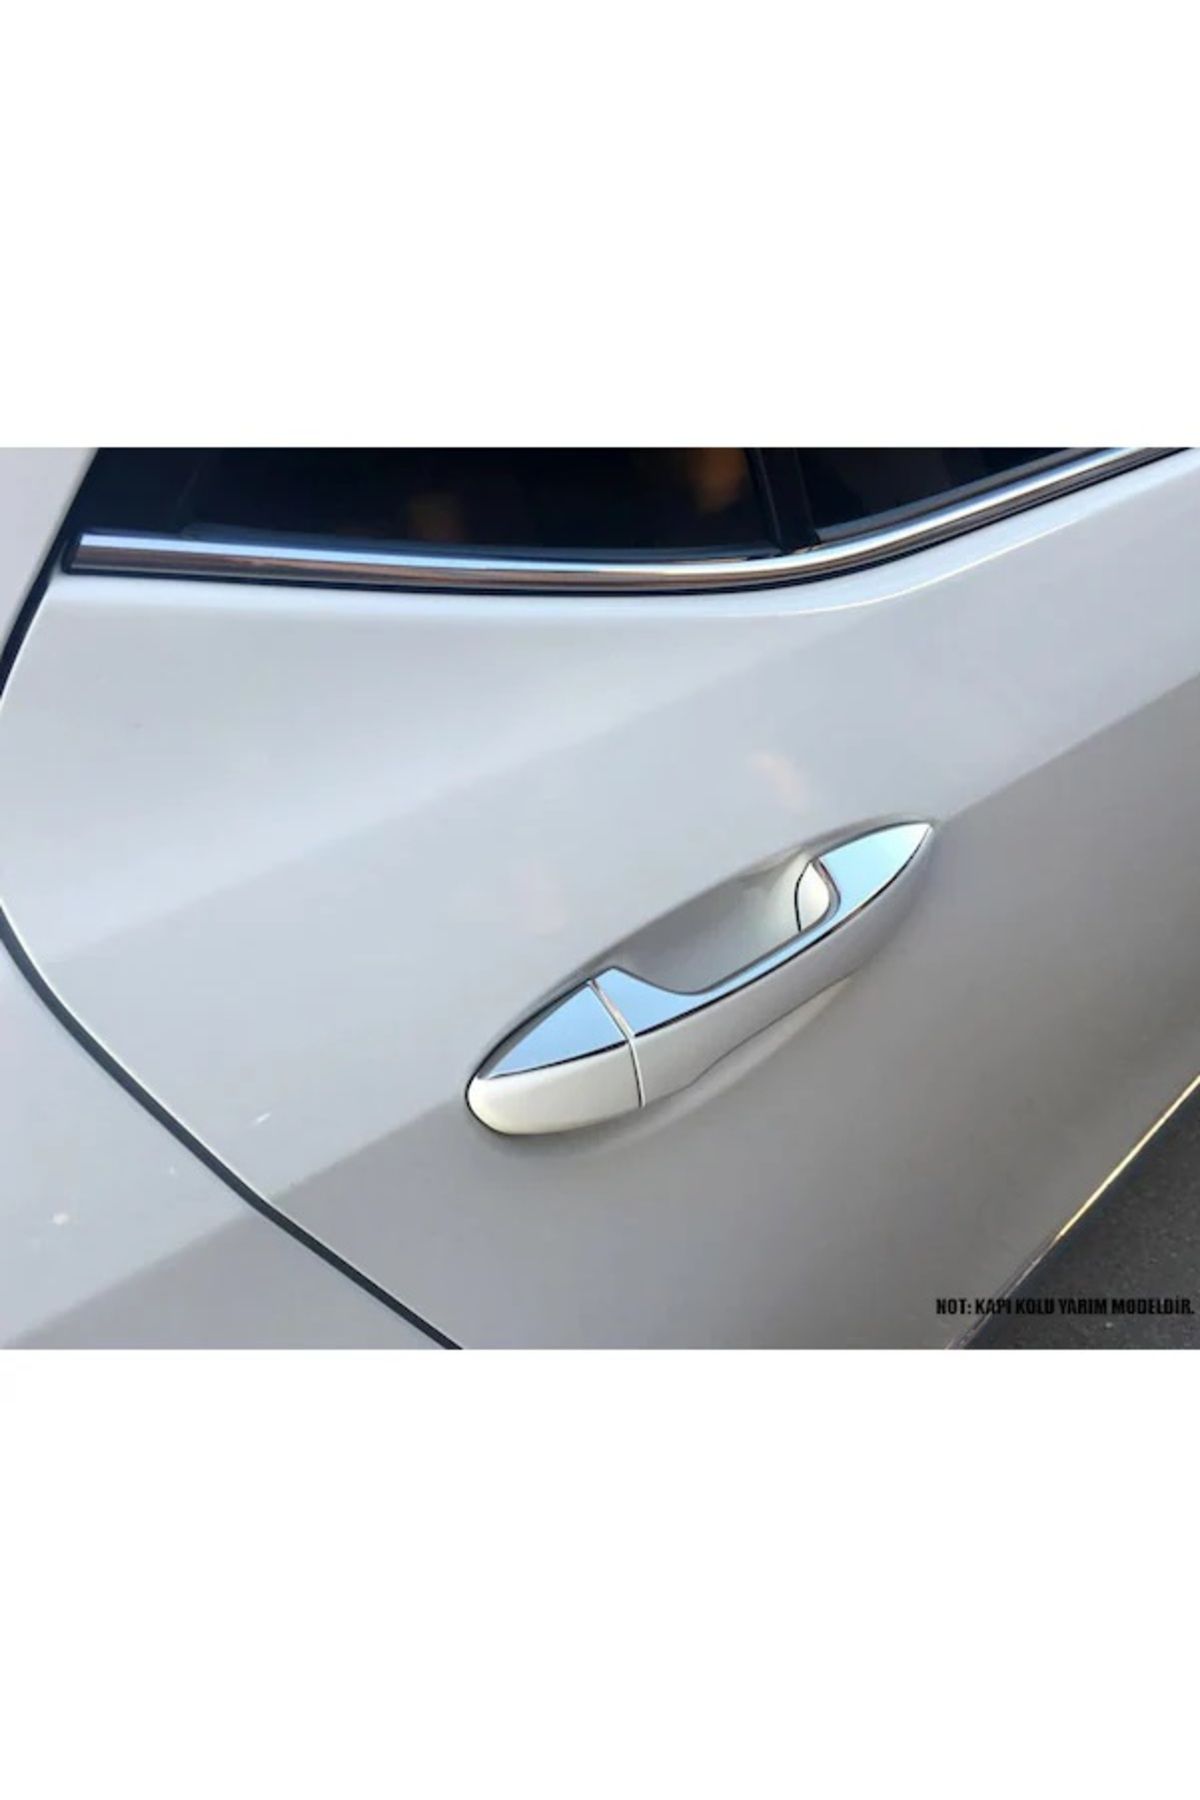 Kumraldede Kapı Kolu Deco Krom 4 Kapı Corolla SD 2013-2018 Arası Modeller İçin